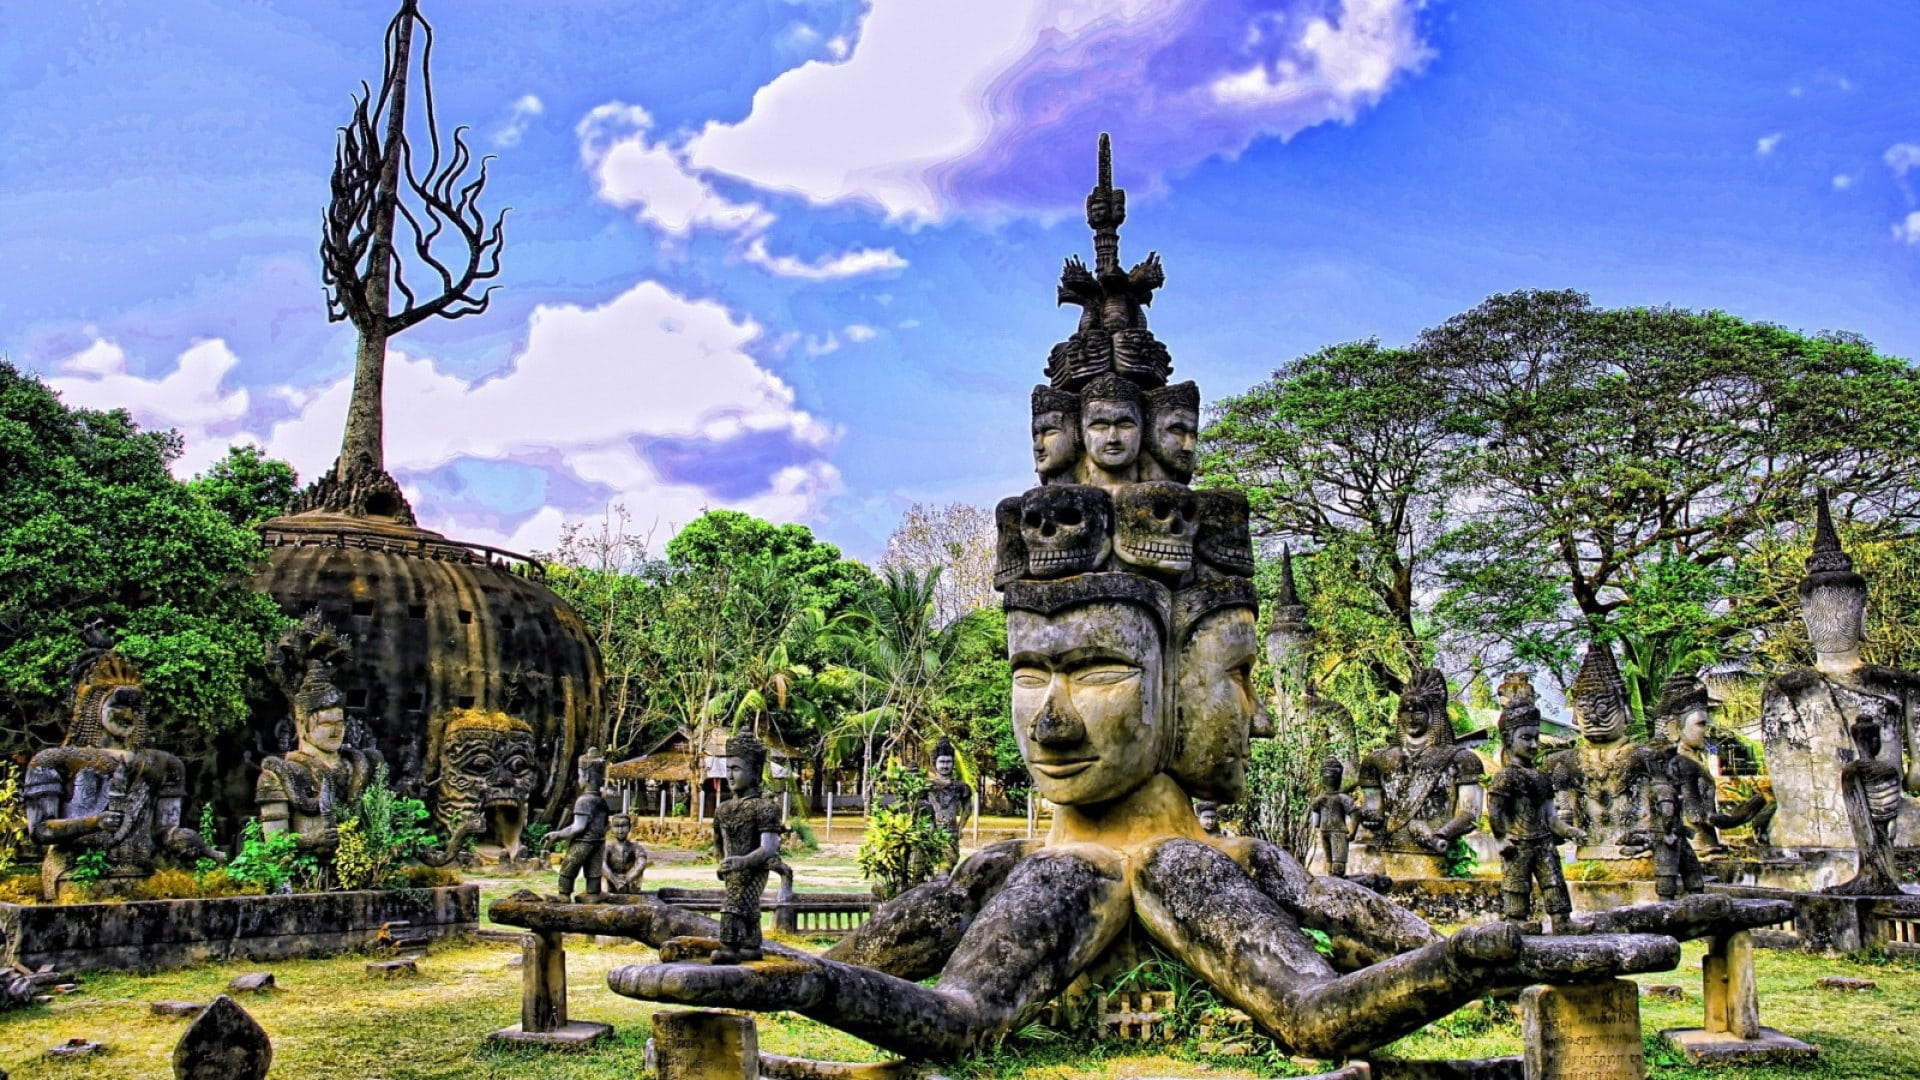 Marele Tur al Indochinei - Laos, Vietnam, Cambodgia, Thailanda (circuit 17 zile / 15 nopti) by Perfect Tour